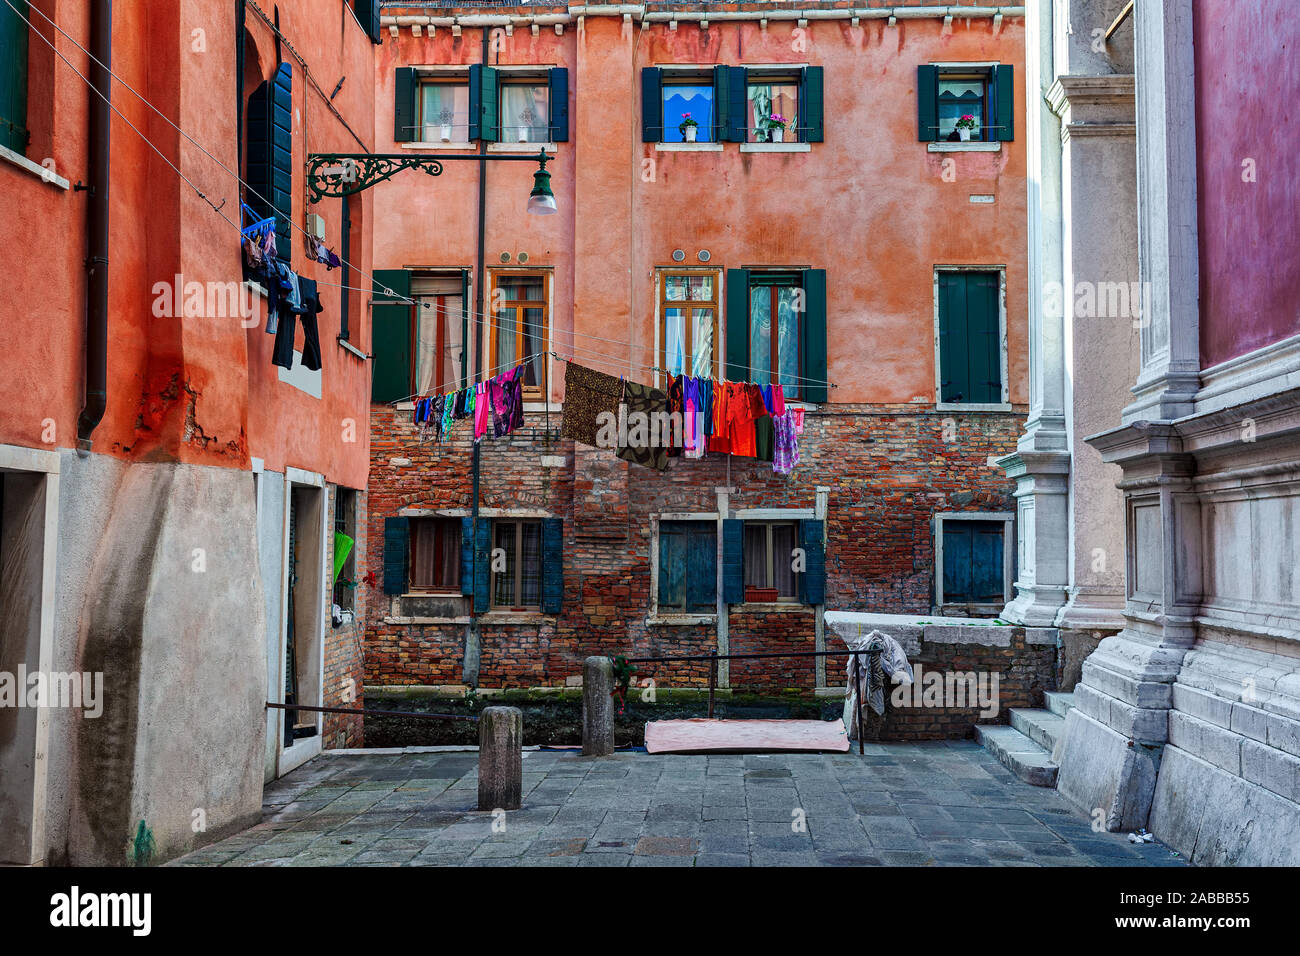 Piccolo quadrato circondato dalle tipiche case colorate con servizio lavanderia su windows a Venezia, Italia. Foto Stock